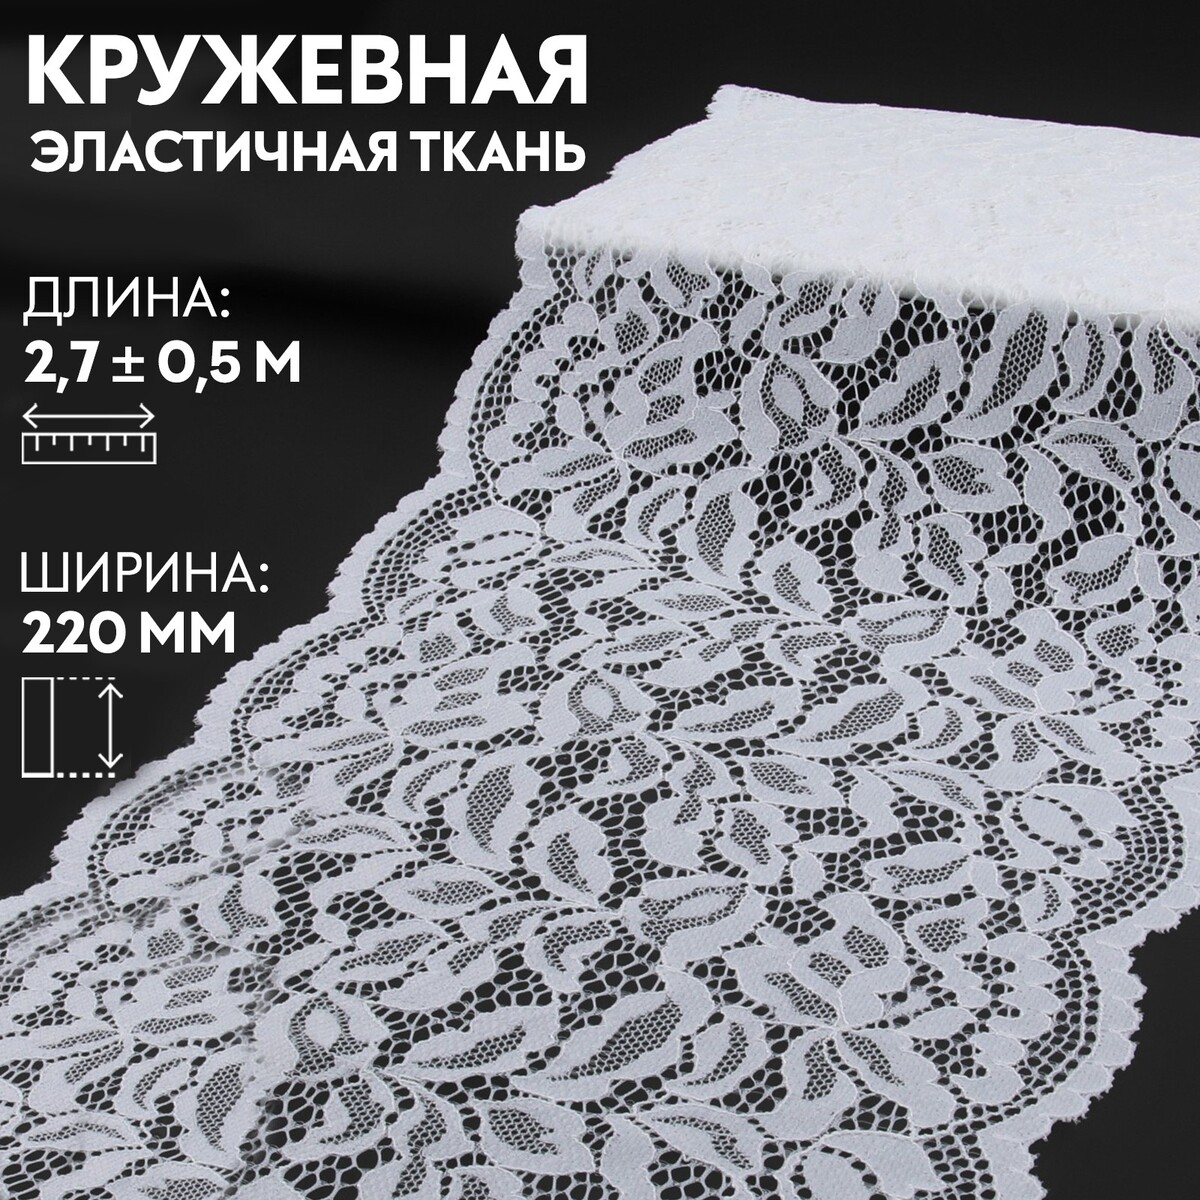 Кружевная эластичная ткань, 220 мм × 2,7 ± 0,5 м, цвет белый